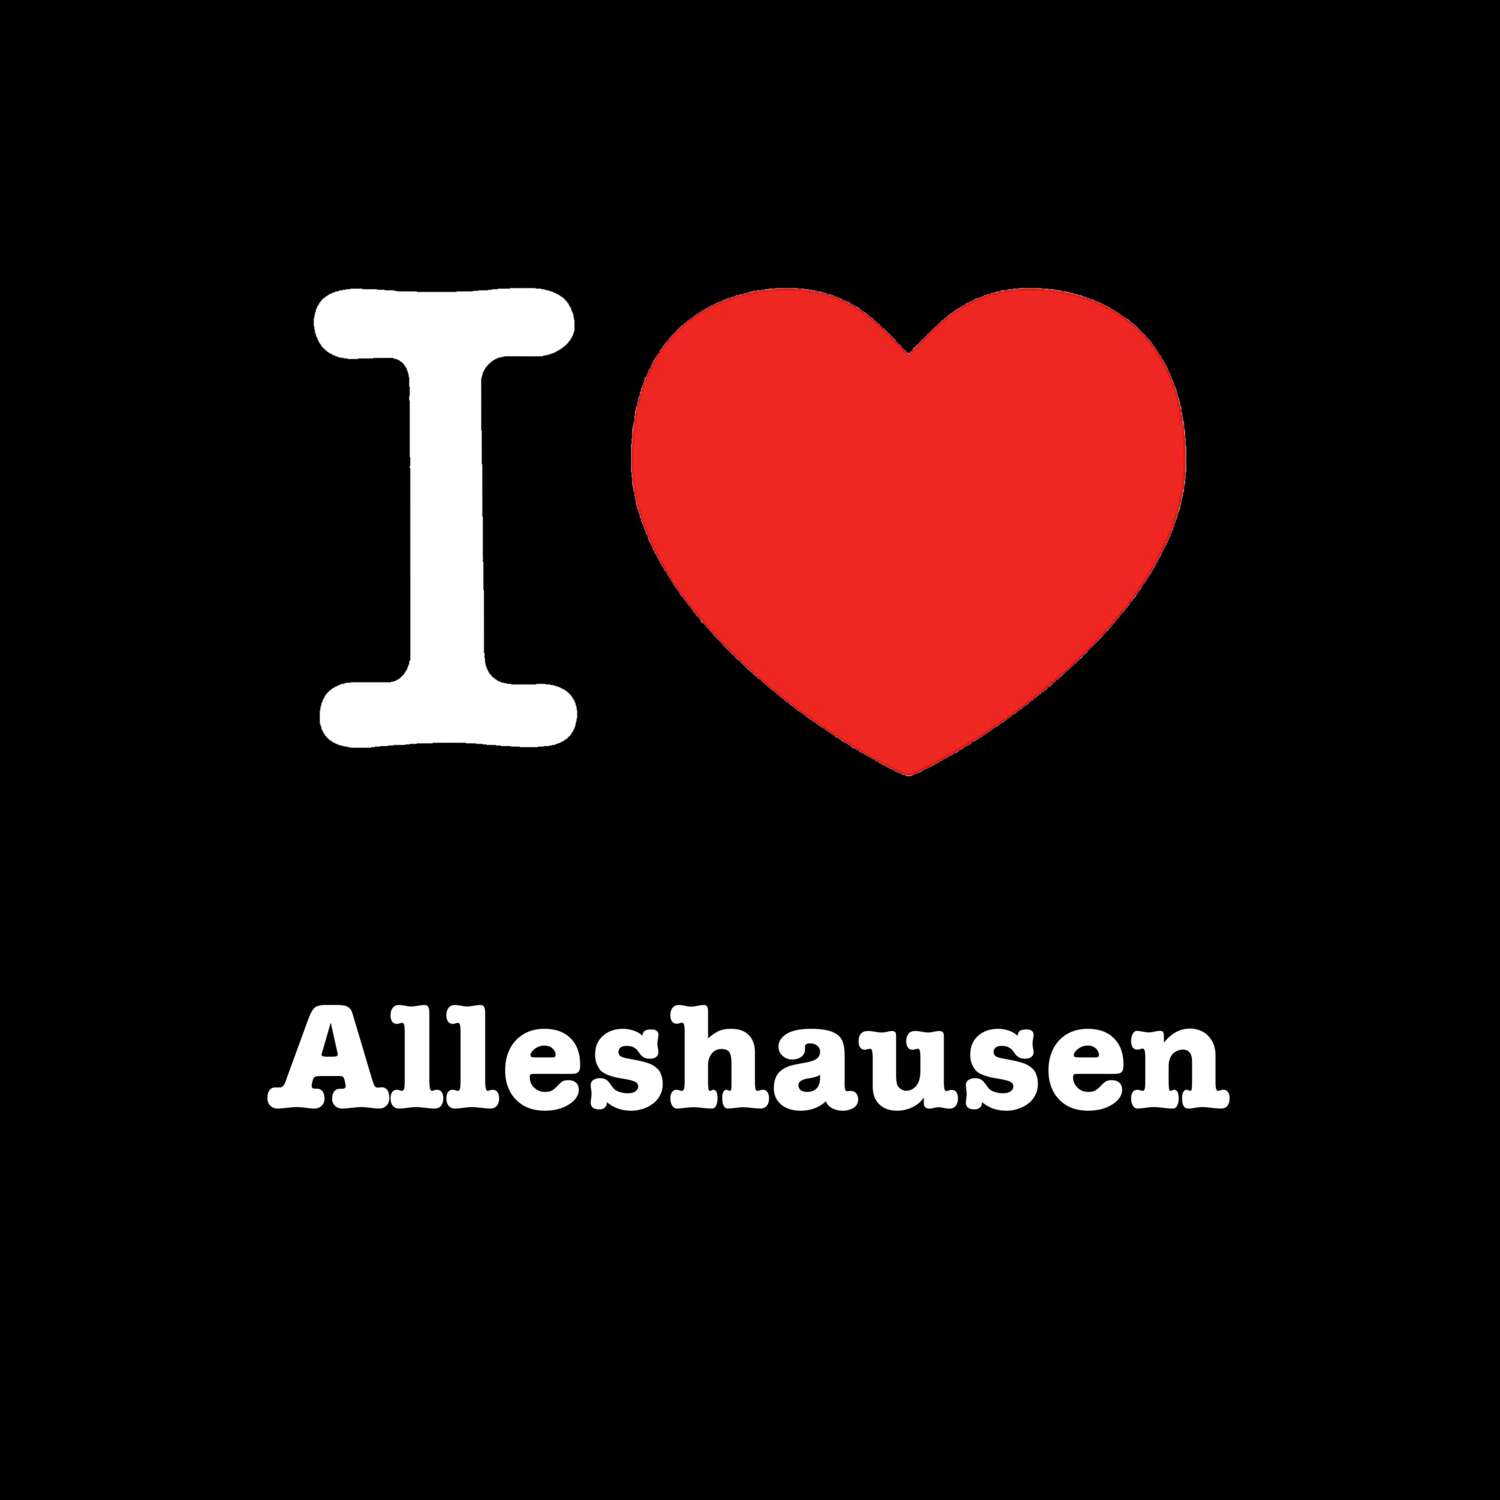 Alleshausen T-Shirt »I love«